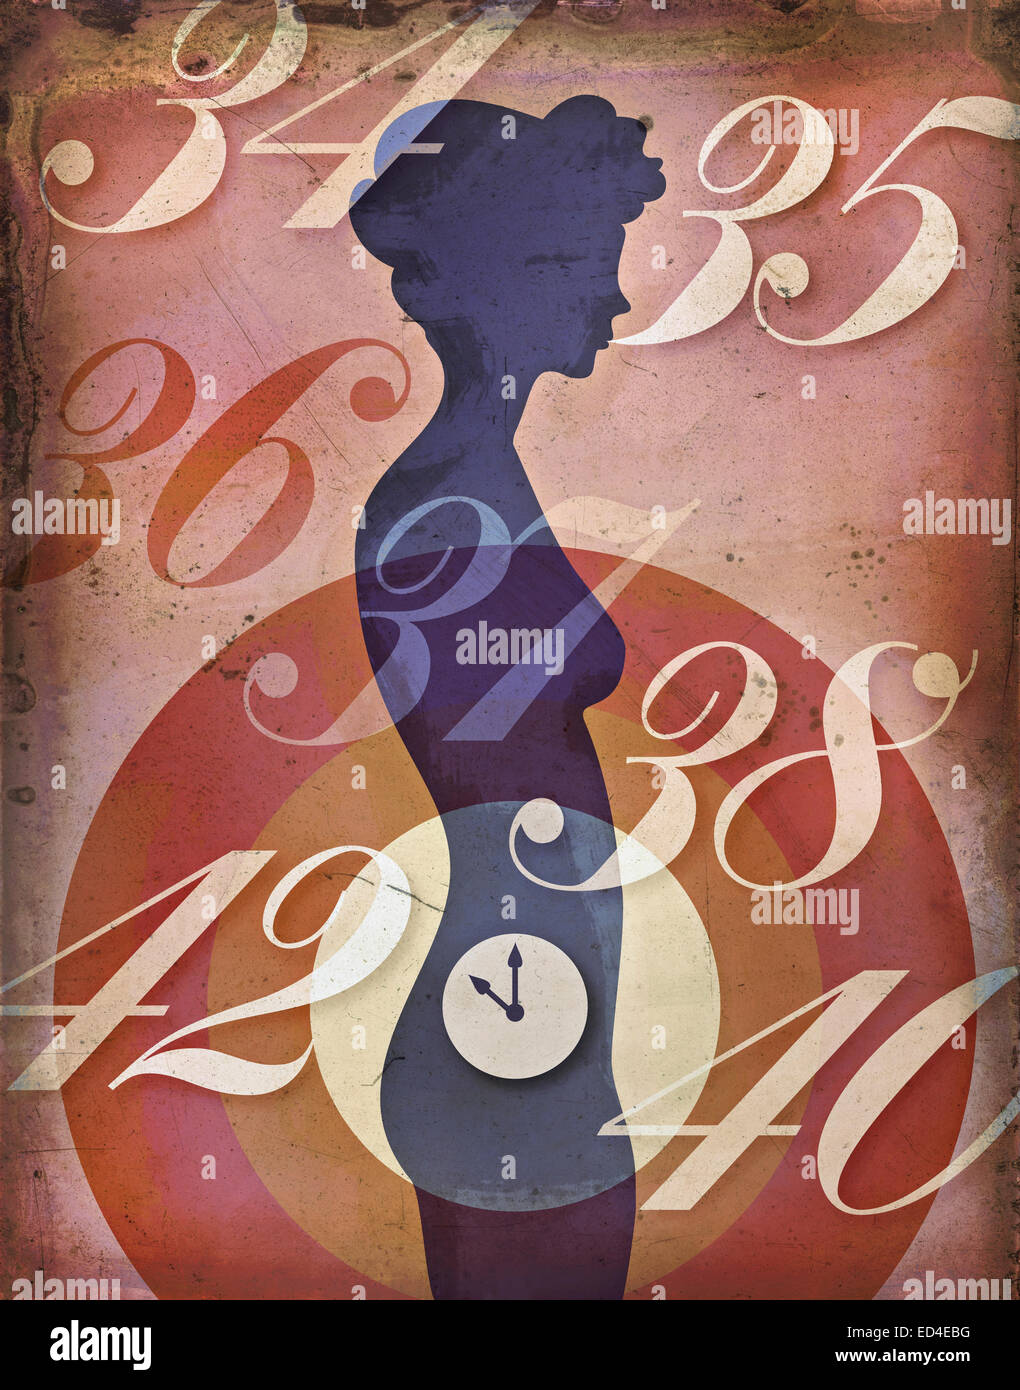 Frau die biologische Uhr Konzept. Retro-Plakat Stil Darstellung der weiblichen Silhouette mit Uhr tickt im Unterleib. Stockfoto